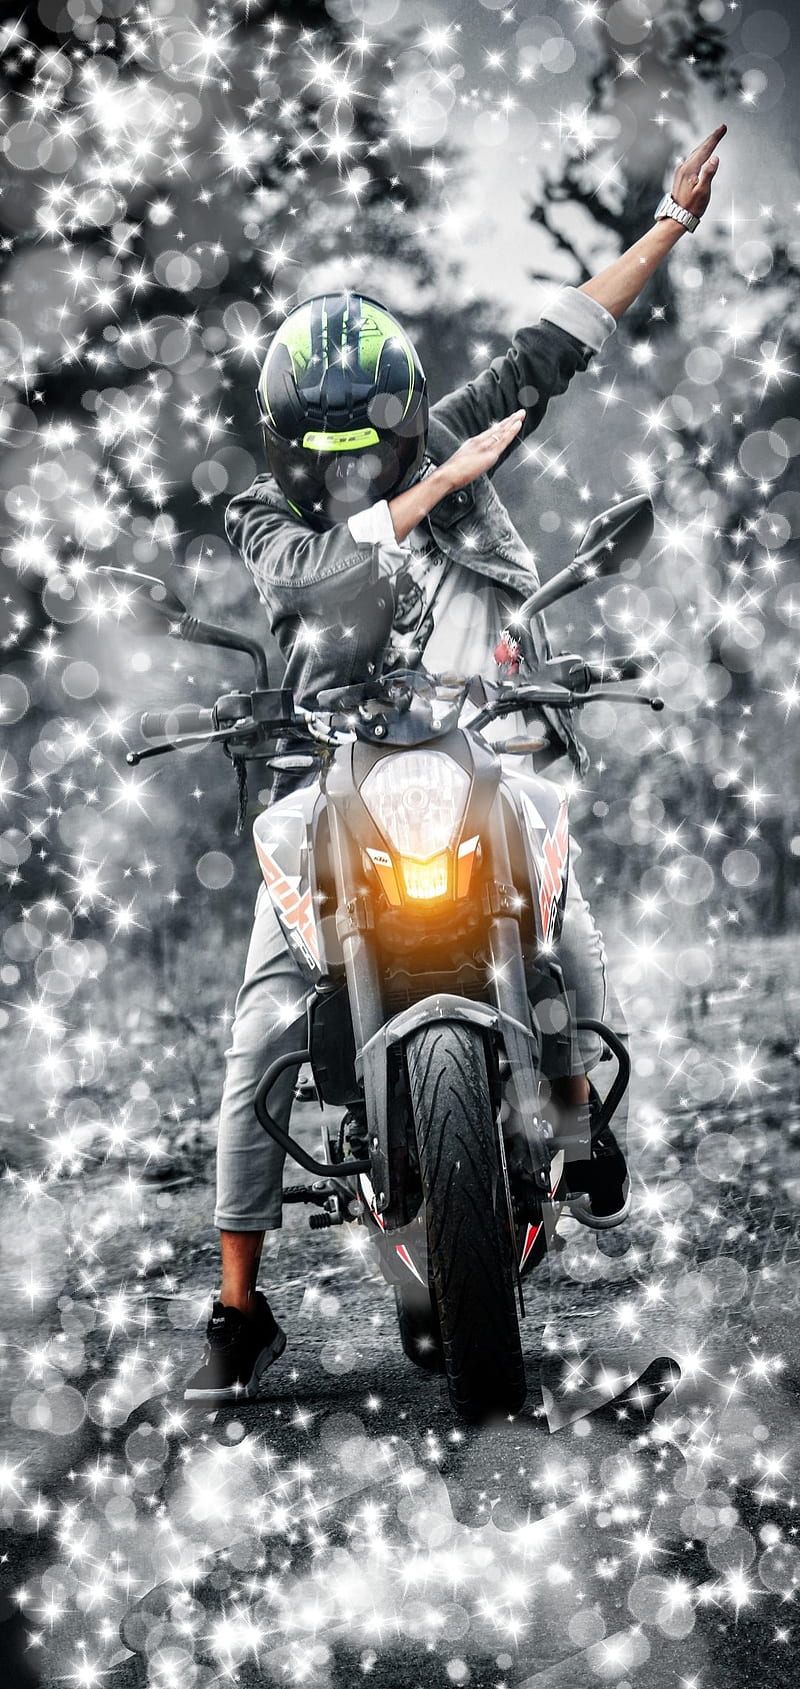 KTM Bike, motorcycle, stunt, monster, HD phone wallpaper | Peakpx